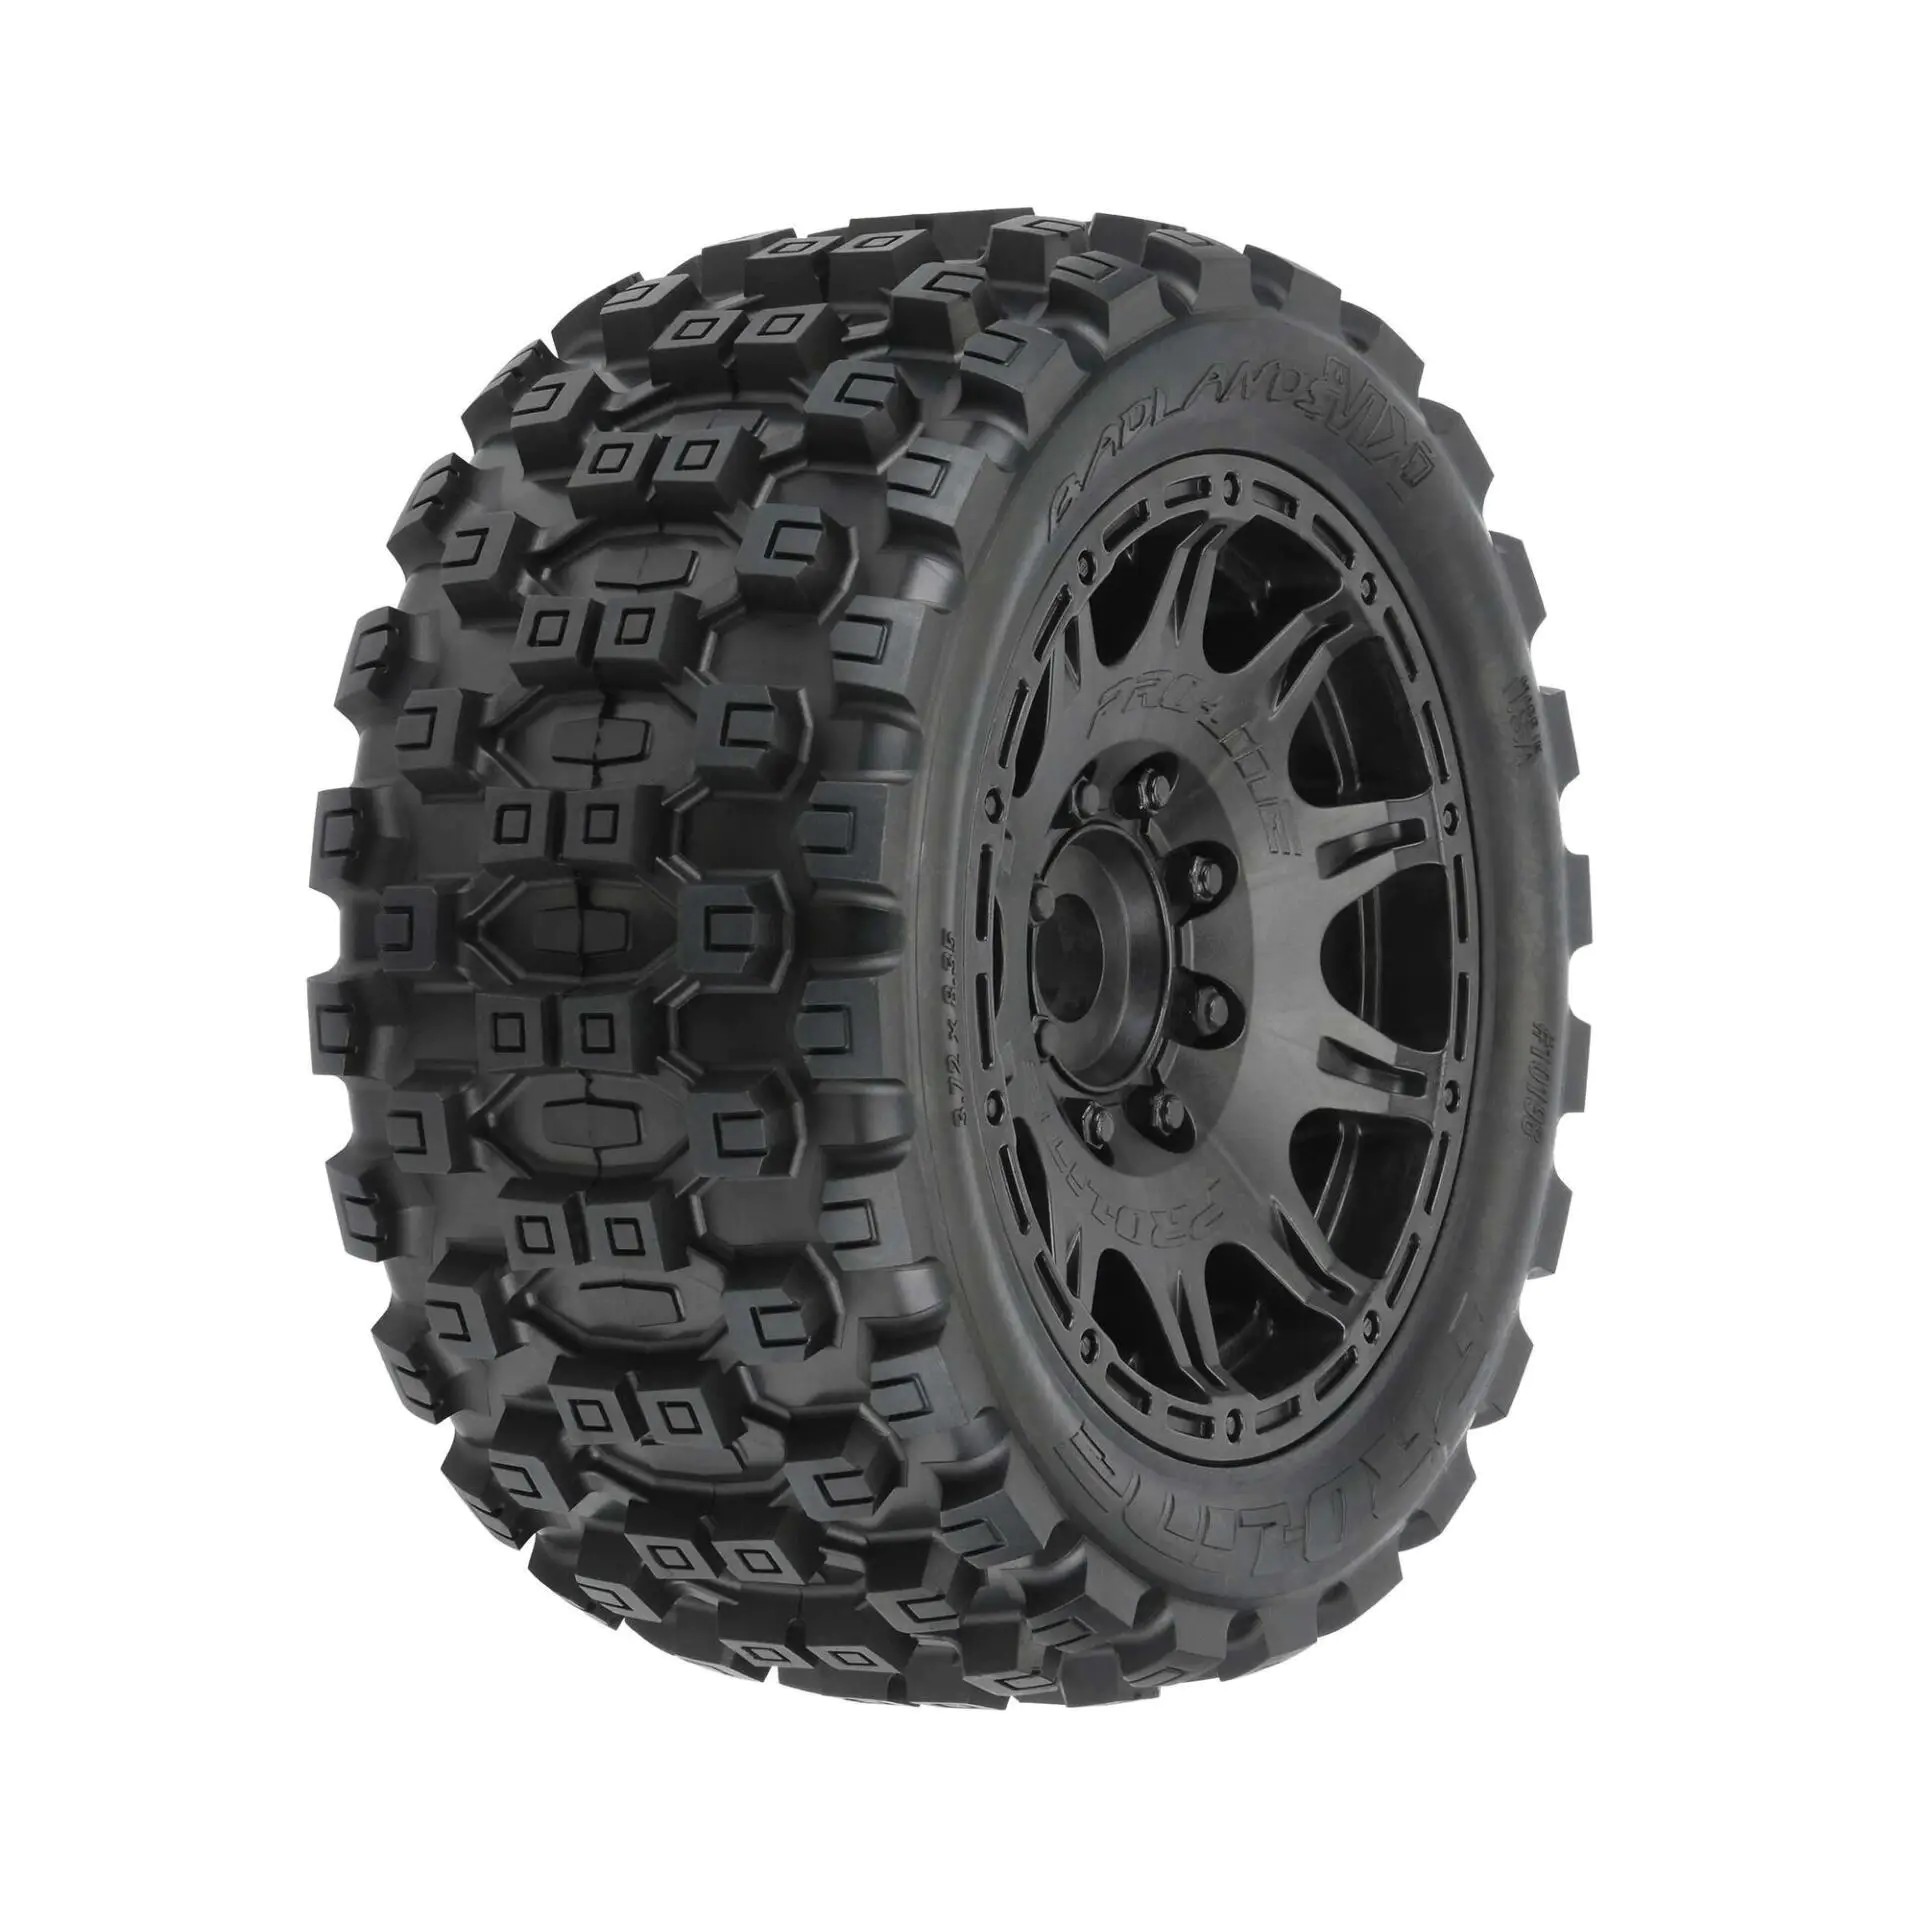 Proline Badlands MX57 Front/Rear 5.7" Tires Mounted 24mm Black Raid (2)